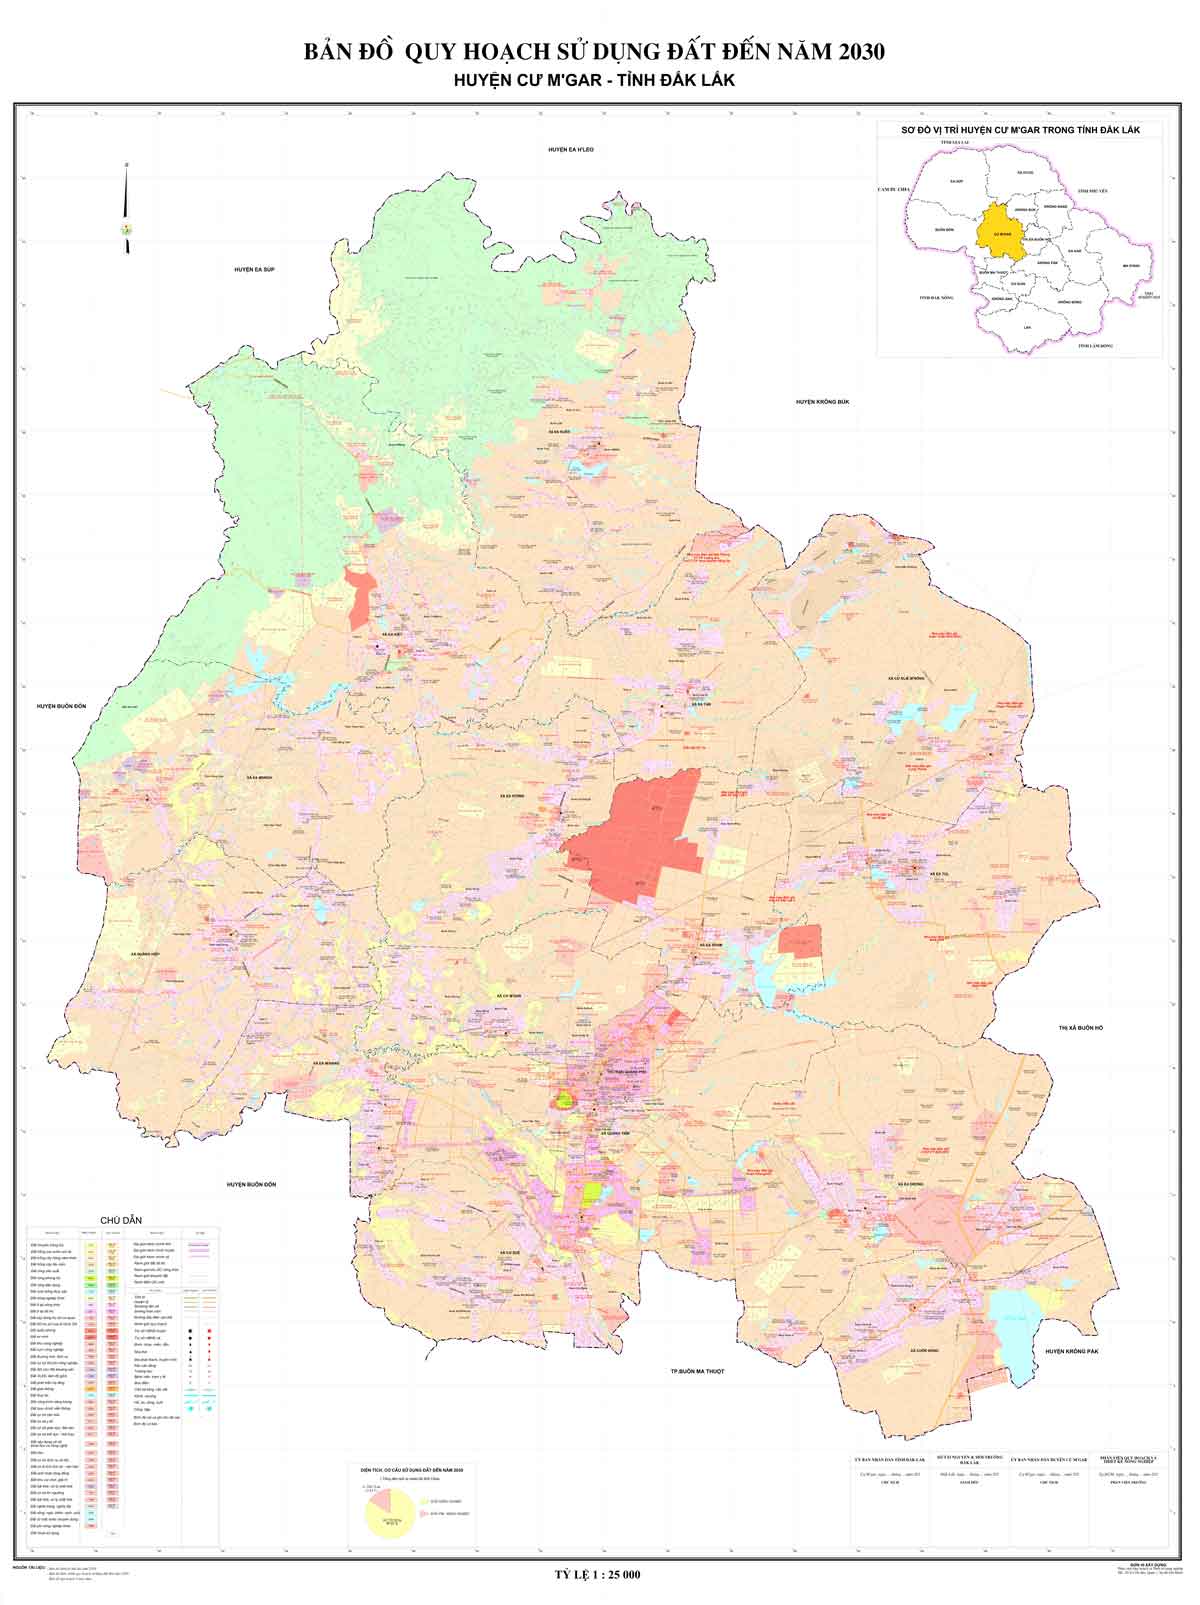 Bản đồ QHSDĐ huyện Cư M'gar đến năm 2030